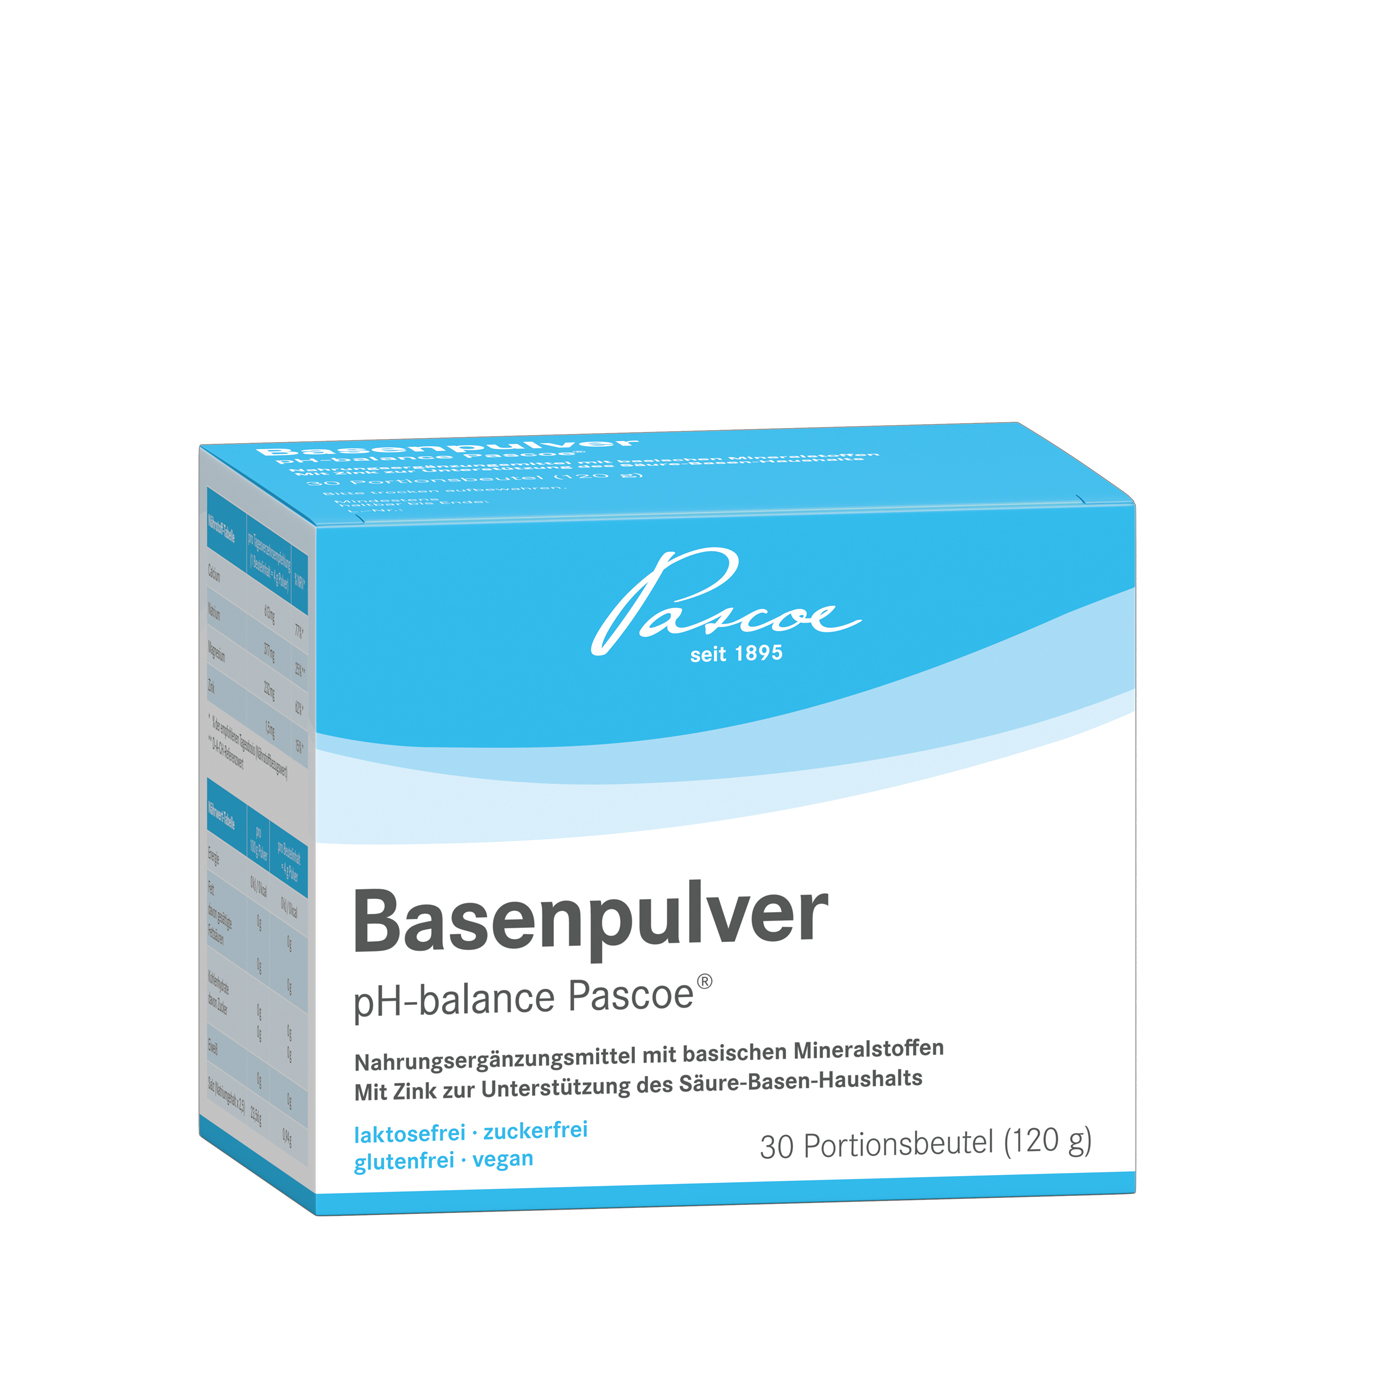 Basenpulver pH-balance Pascoe 30 Beutel (120 g) Packshot PZN 05462969